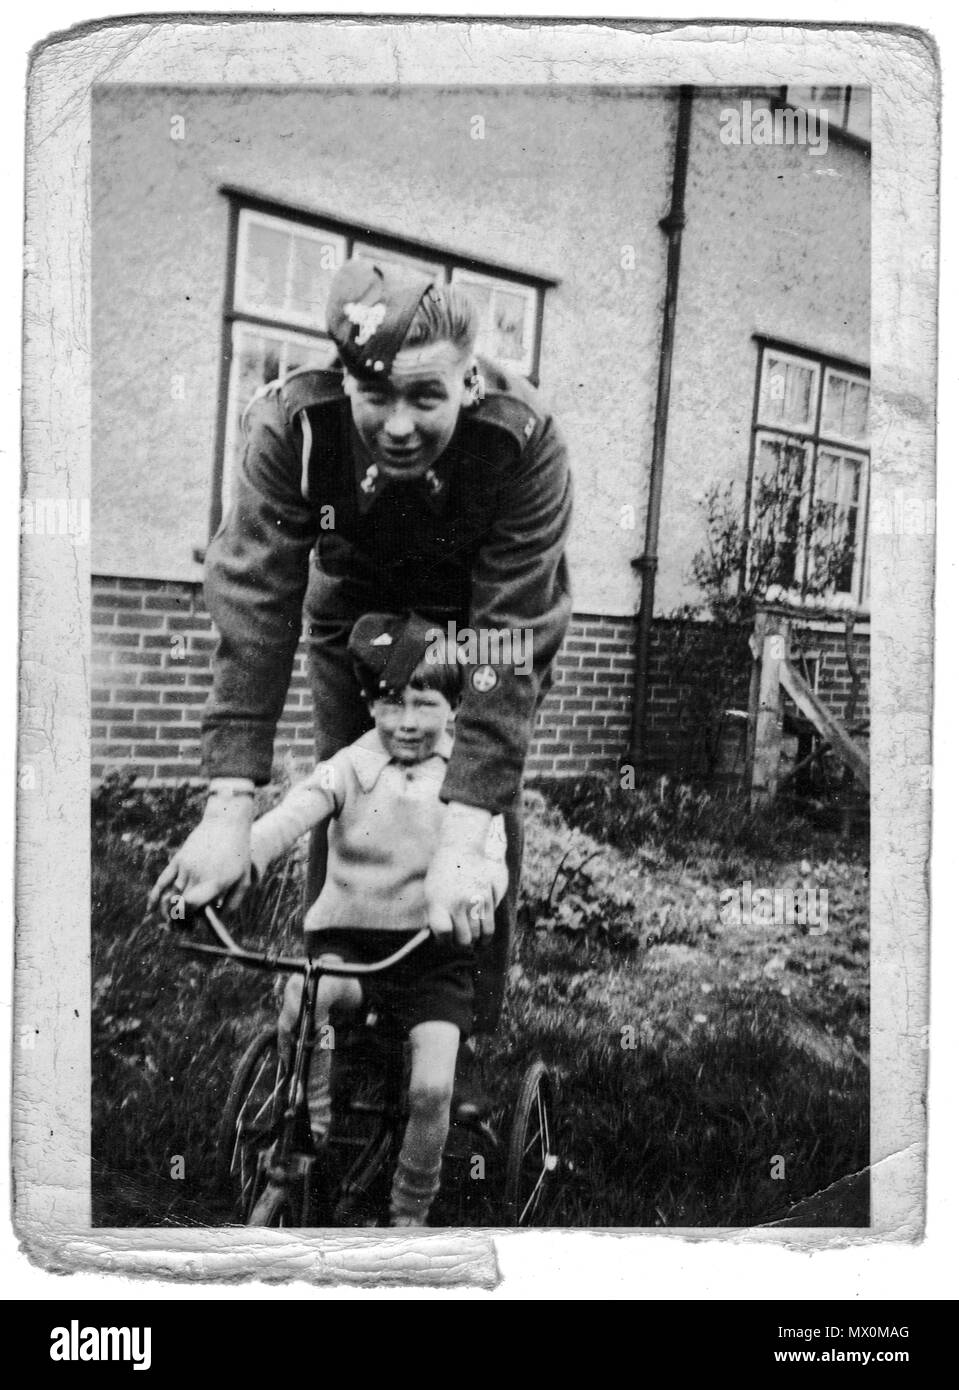 Accueil soldat en congé avec son jeune frère, avant de partir pour le Moyen-Orient en 1940, le Royaume-Uni, la seconde guerre mondiale Banque D'Images